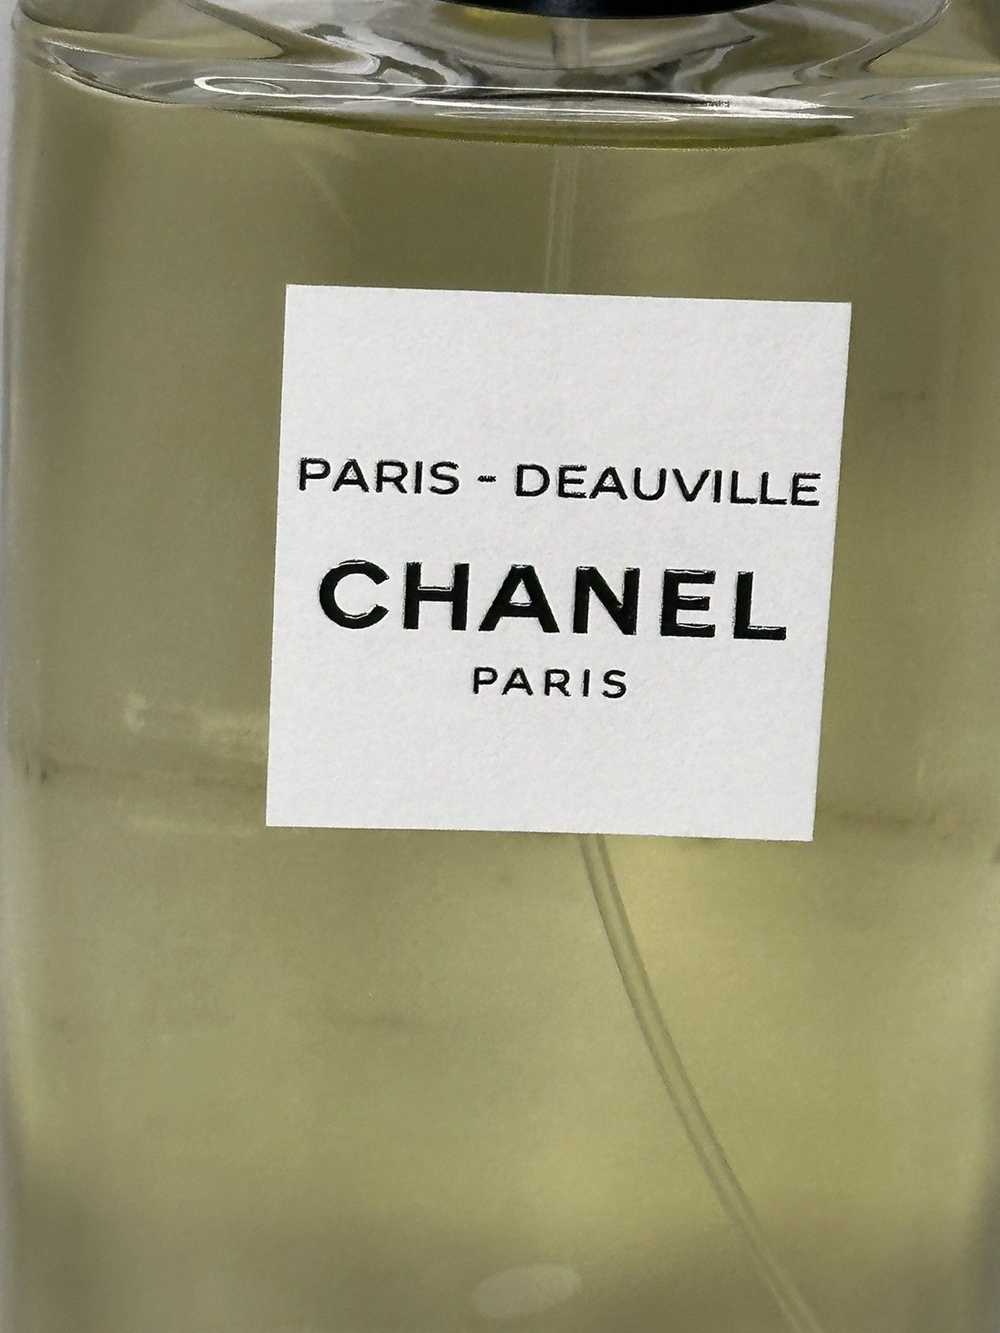 Chanel CHANEL PARIS DEAUVILLE 4.2FLOZ - image 10